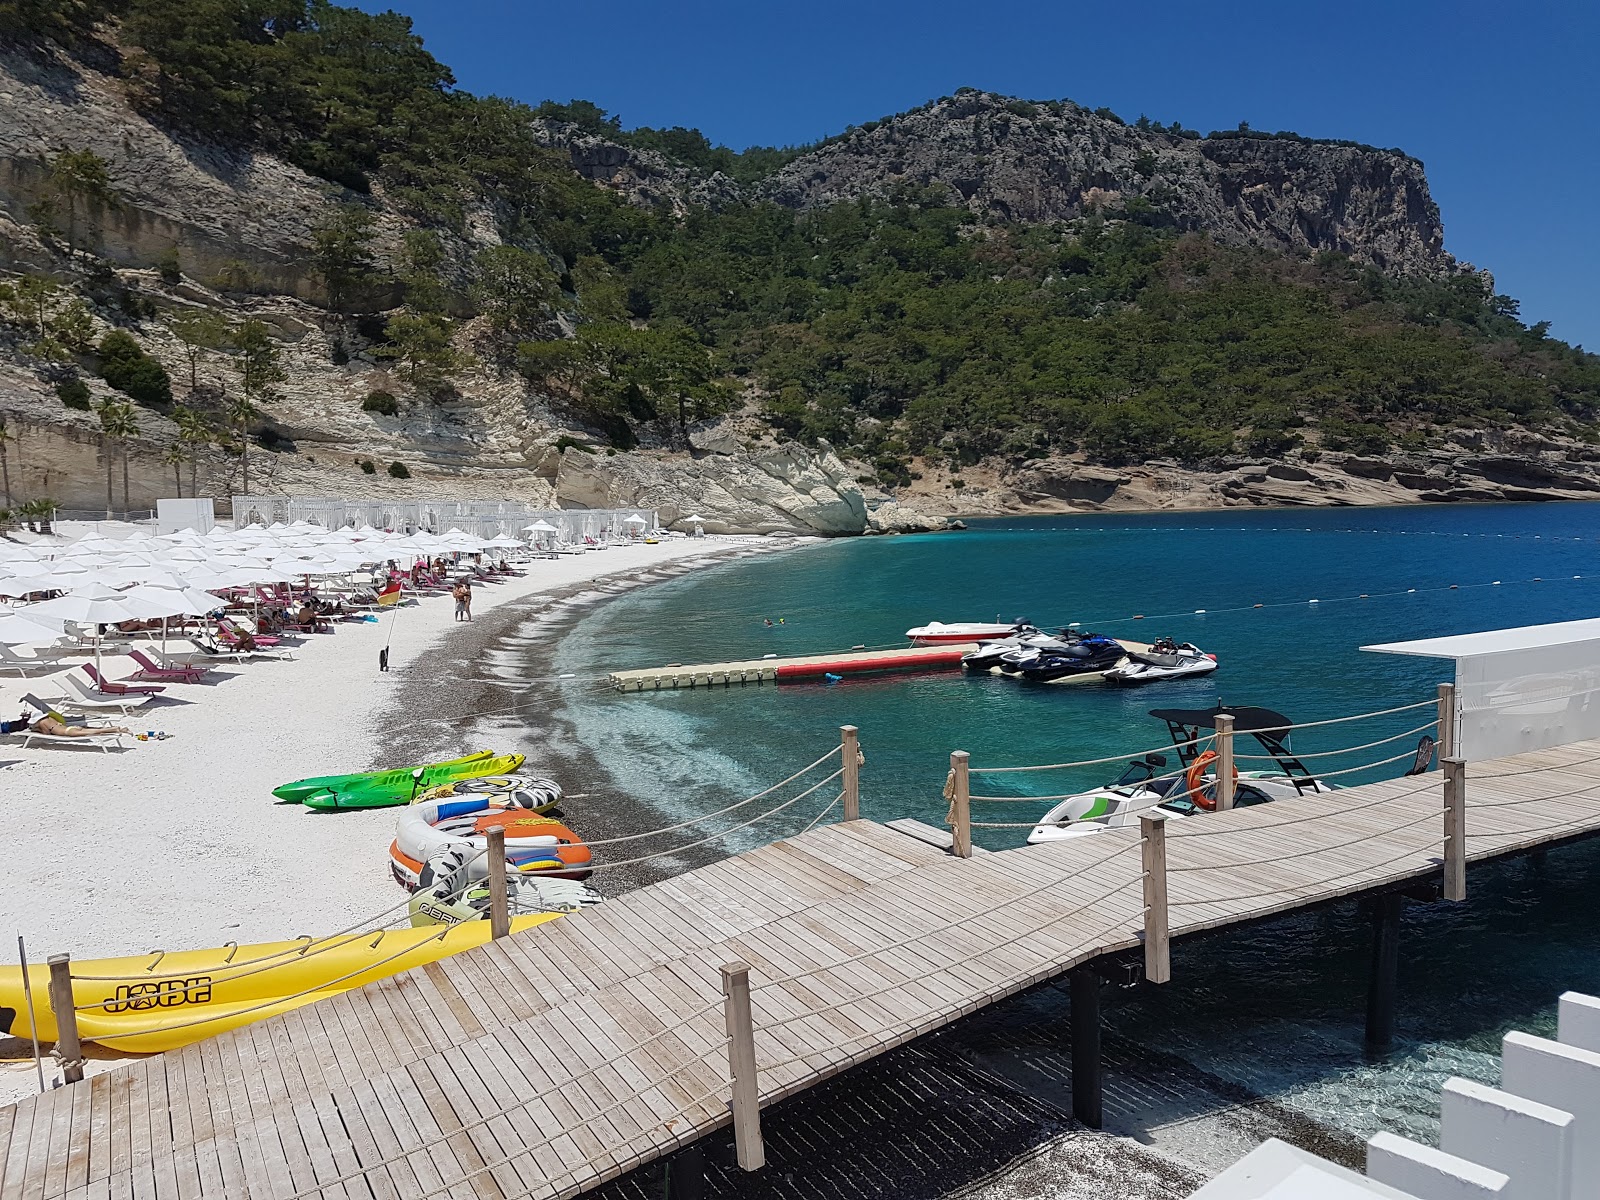 Qualista Plajı II'in fotoğrafı hafif ince çakıl taş yüzey ile